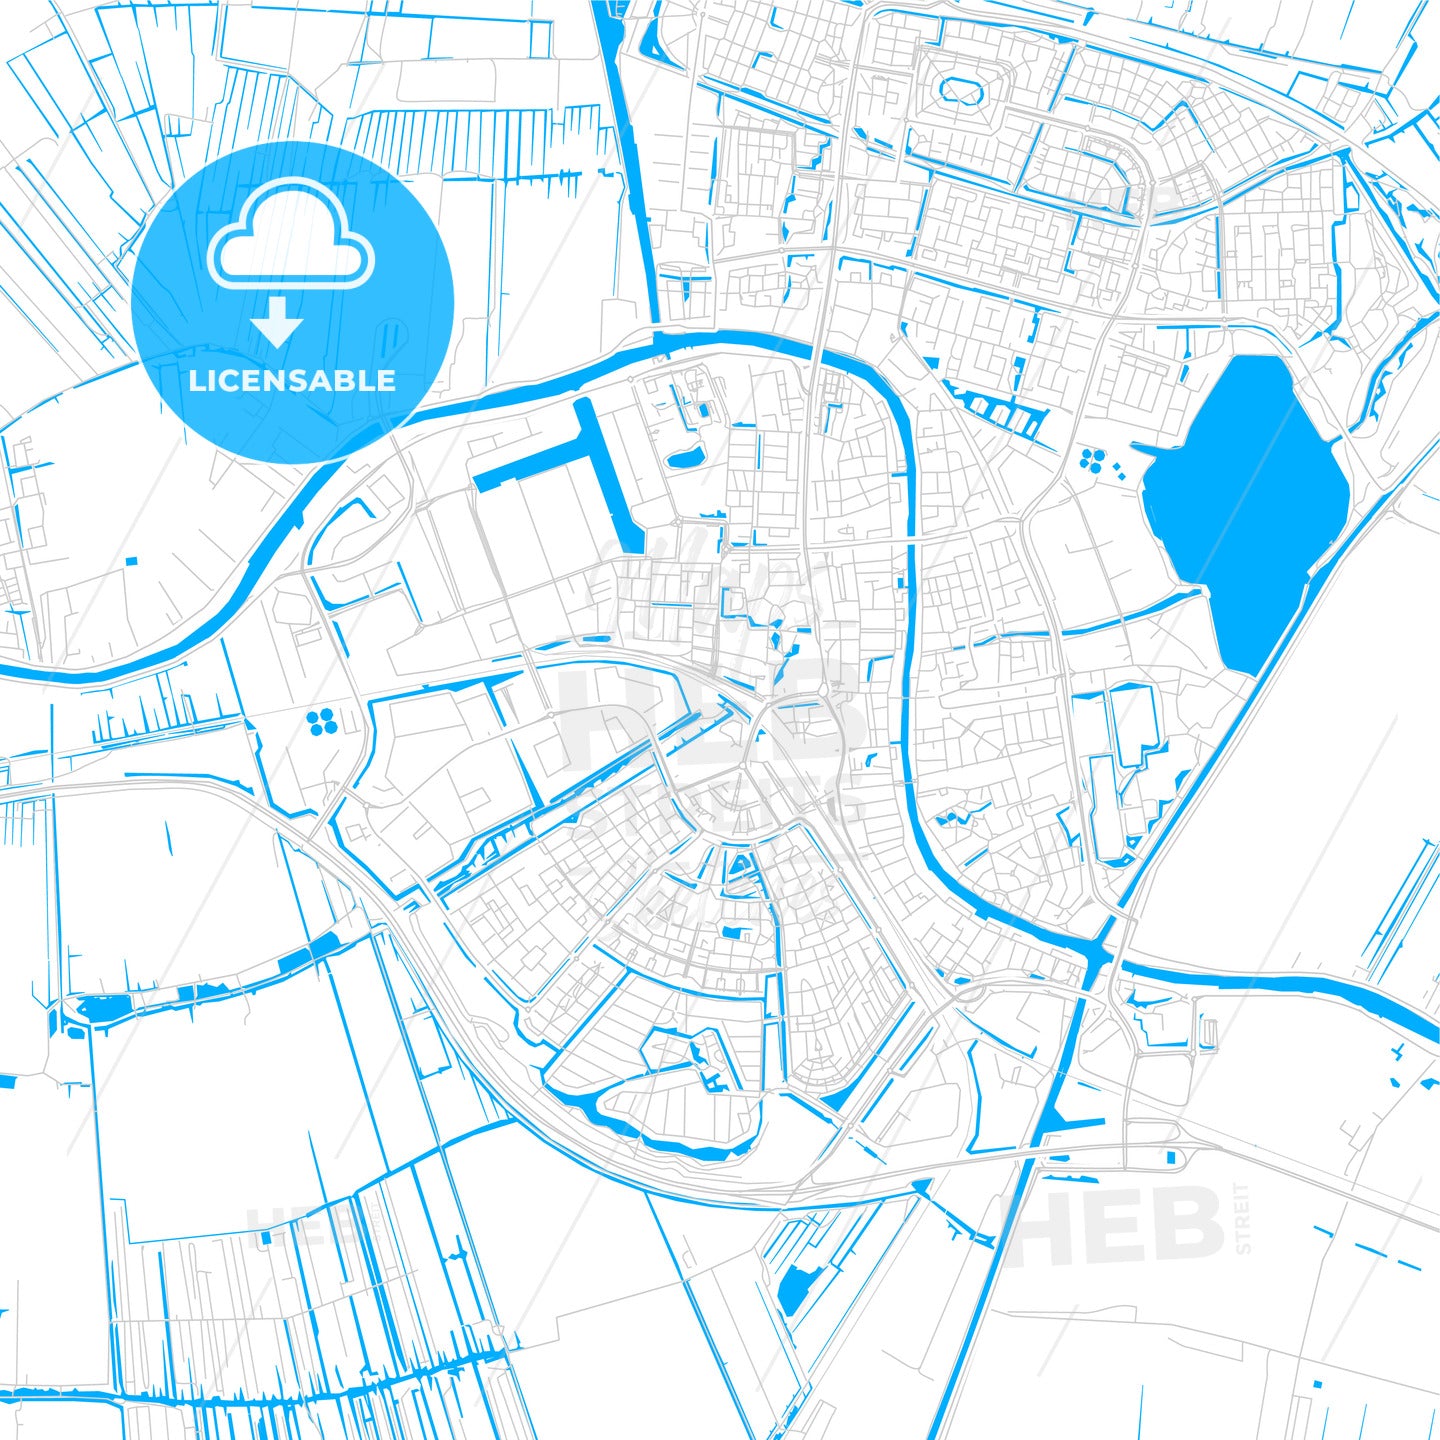 Alphen aan den Rijn, Netherlands bright two-toned vector map